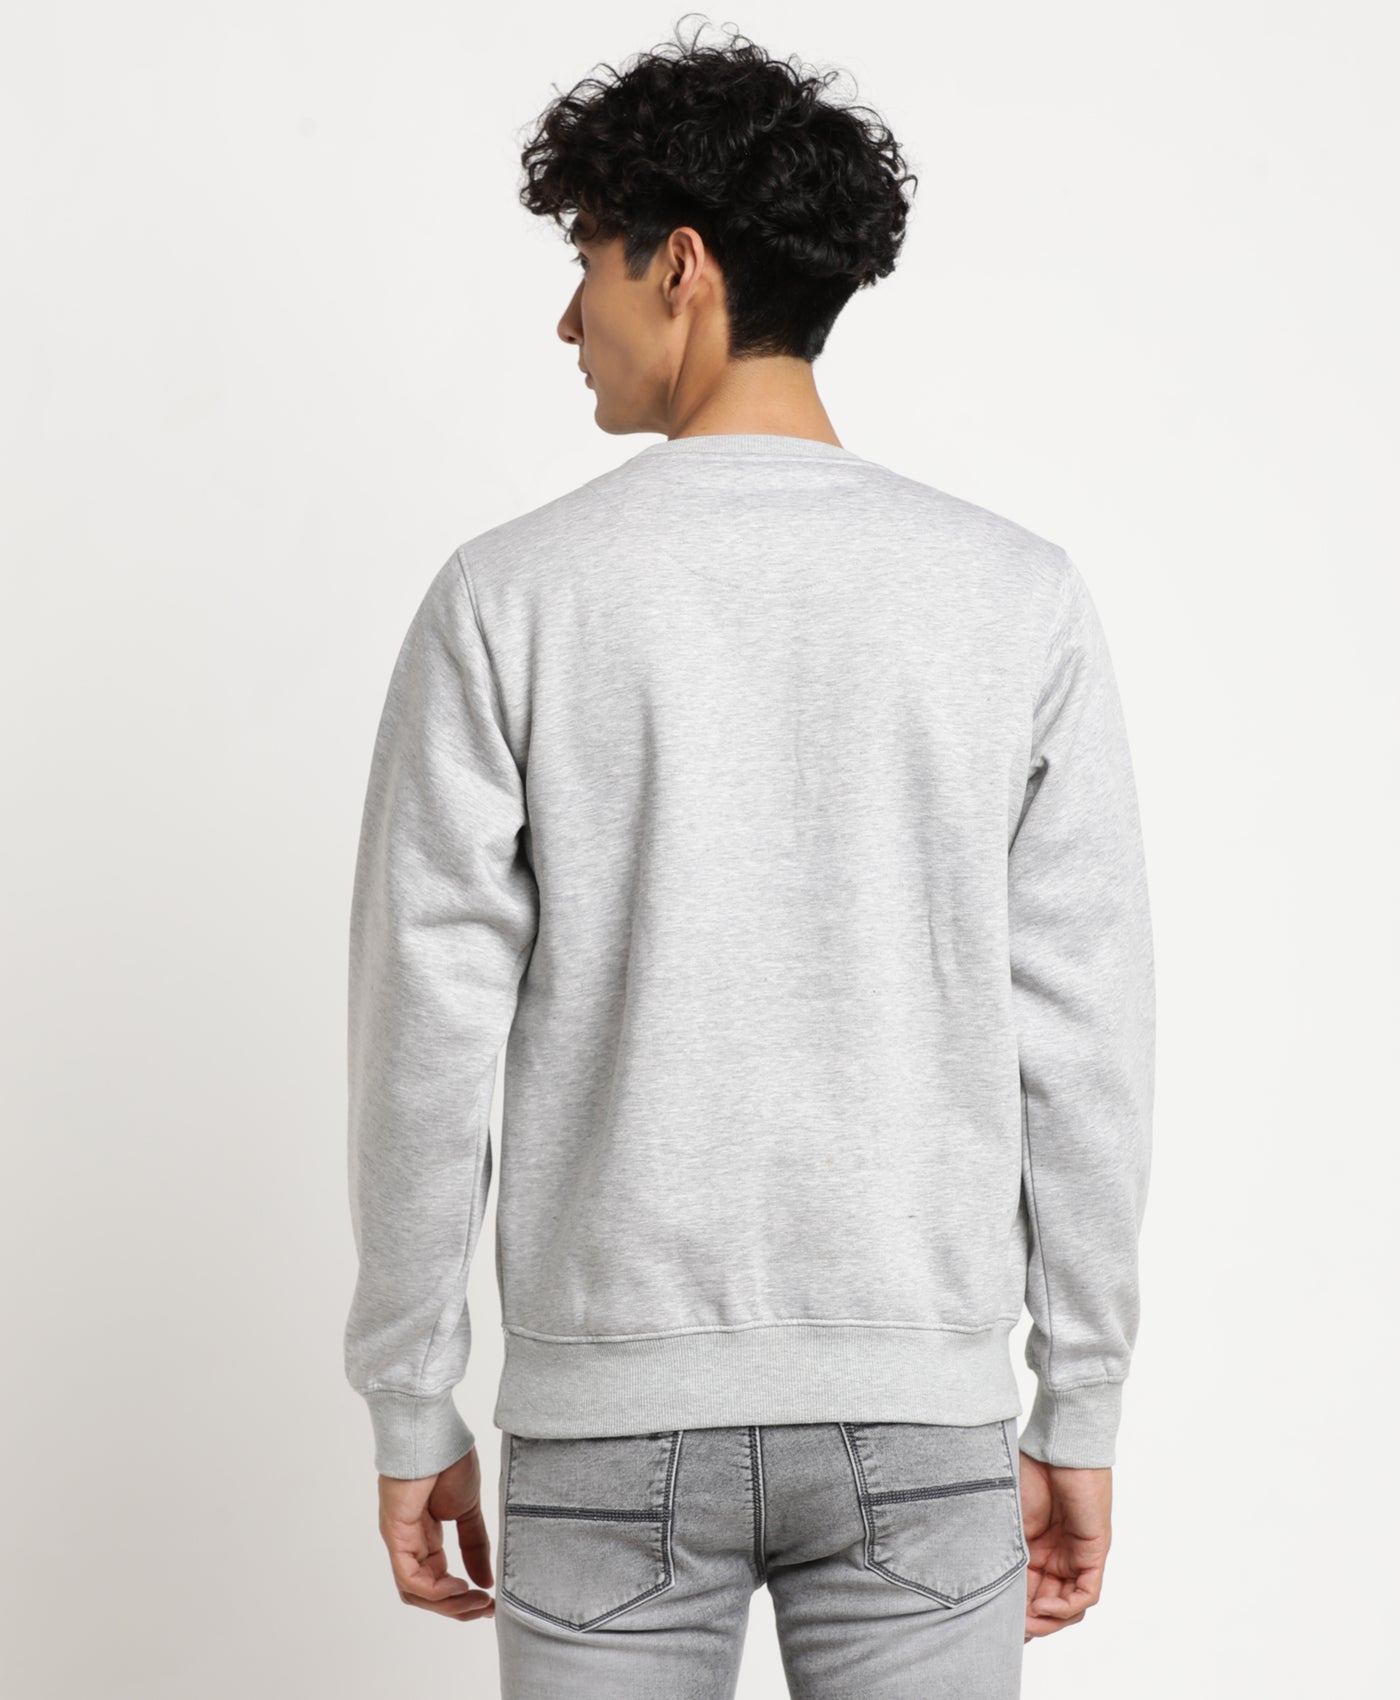 Grey Printed Polyester Cotton Round Neck Sweatshirt